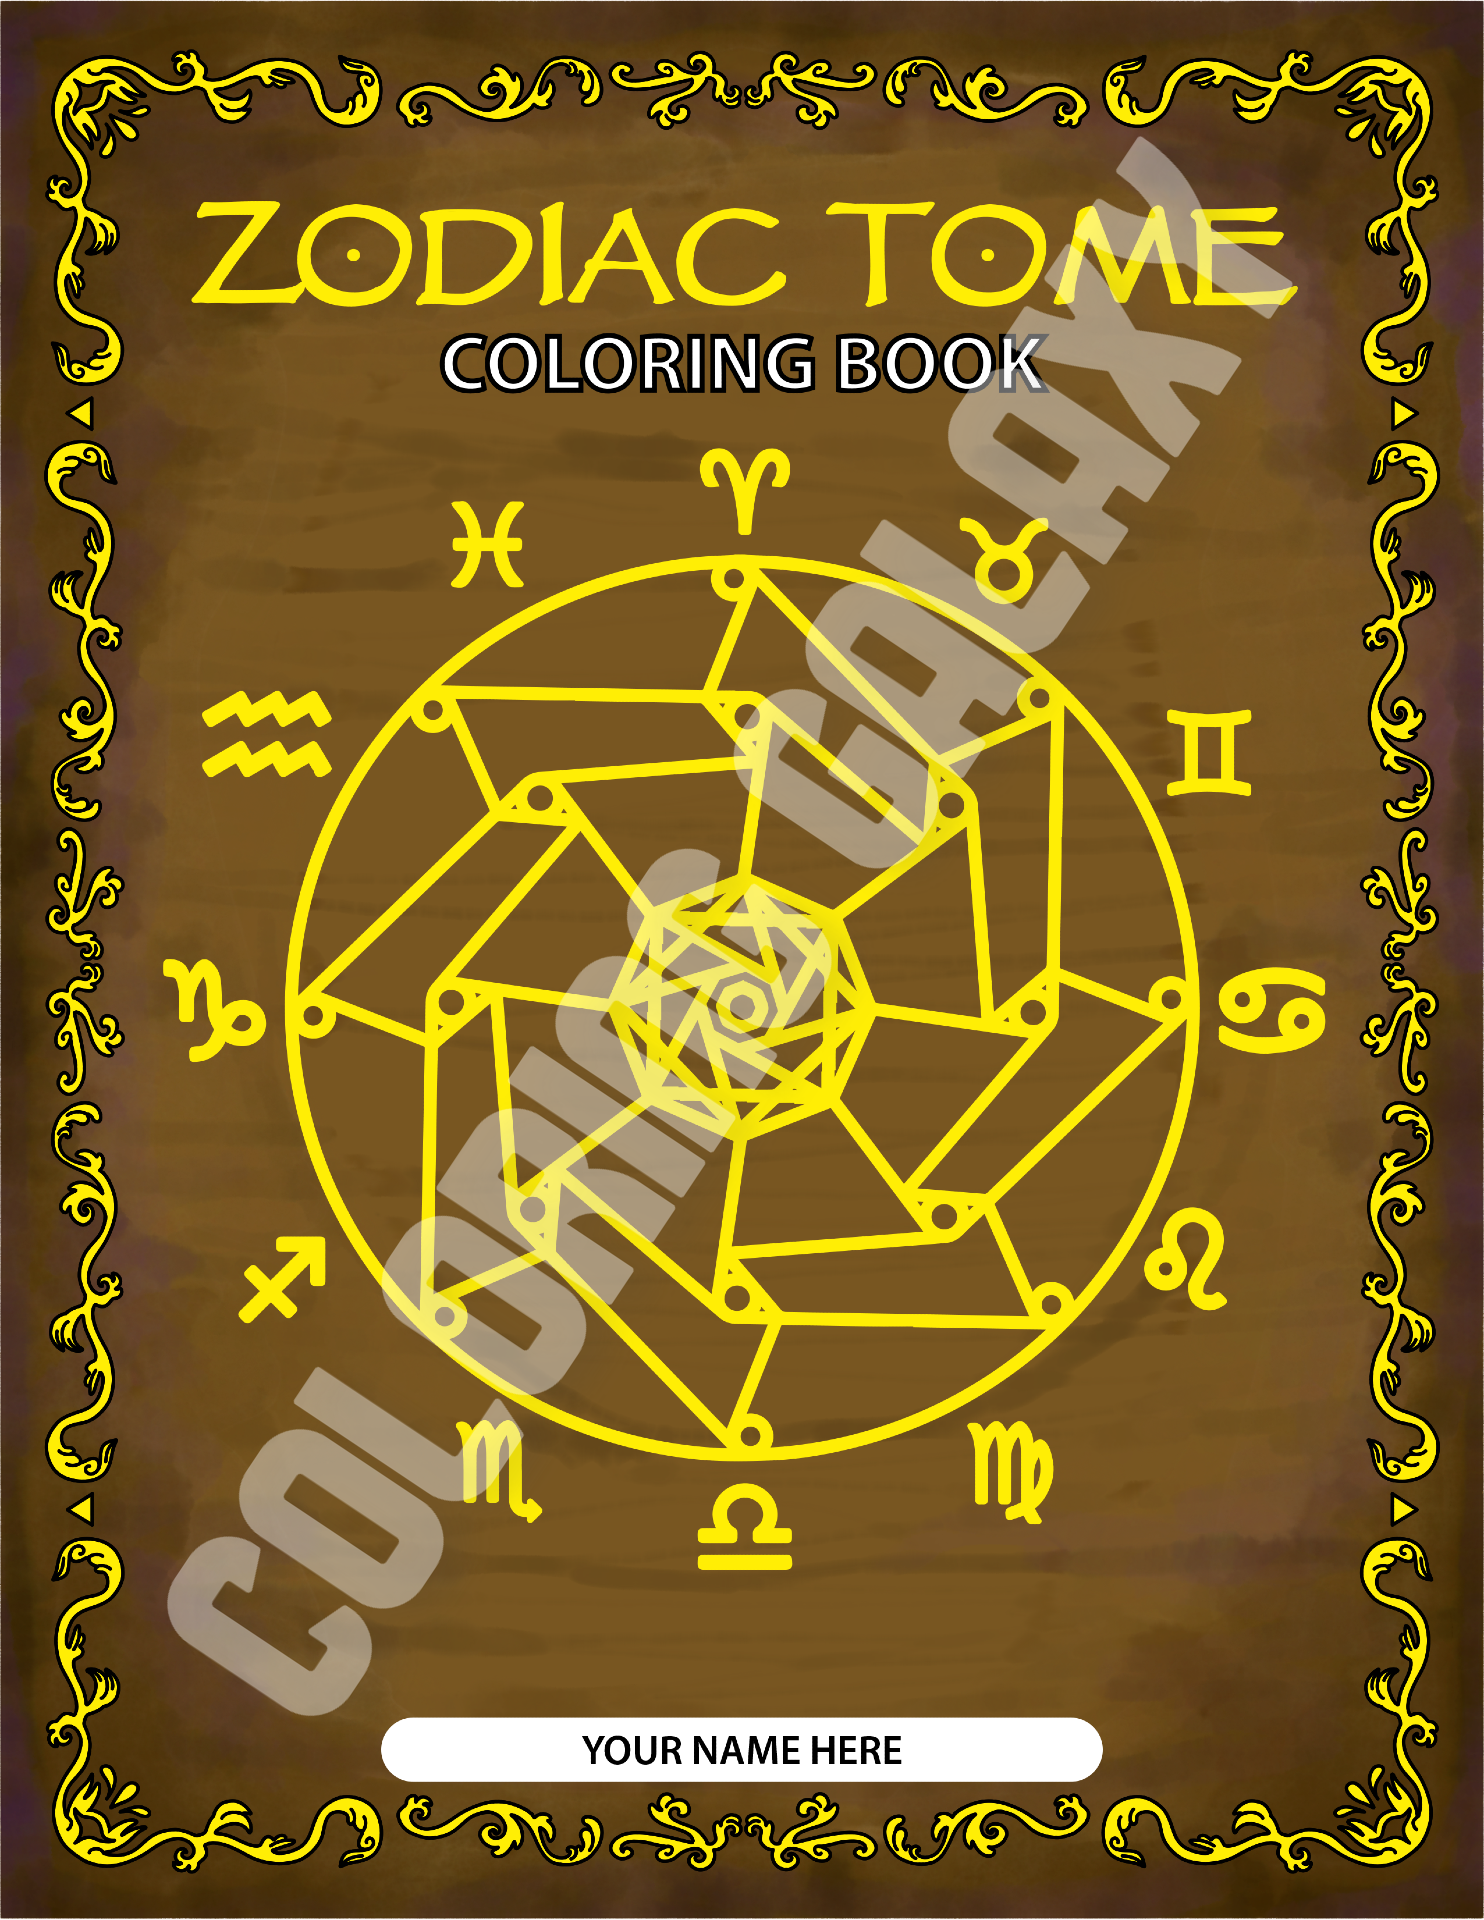 Zodiac Tome front cover colored